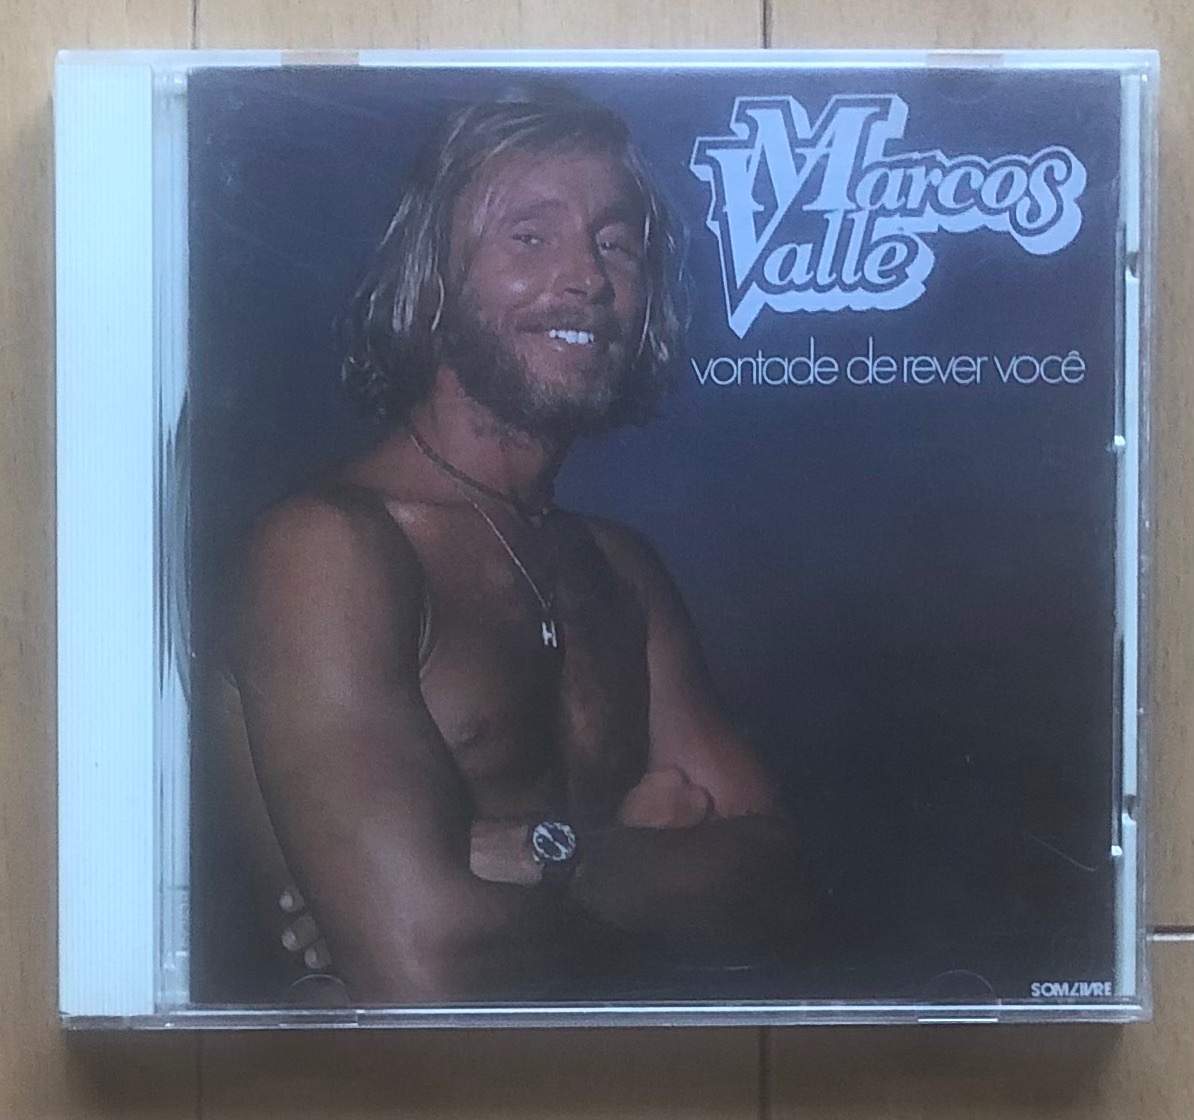 Marcos Valle「Vontade De Rever Voce」。僕が聴くきっかけになったのはフリーソウルですが、AORフリークの人の方が思い入れは強いんですかね。アルバム全曲キラーチューン。